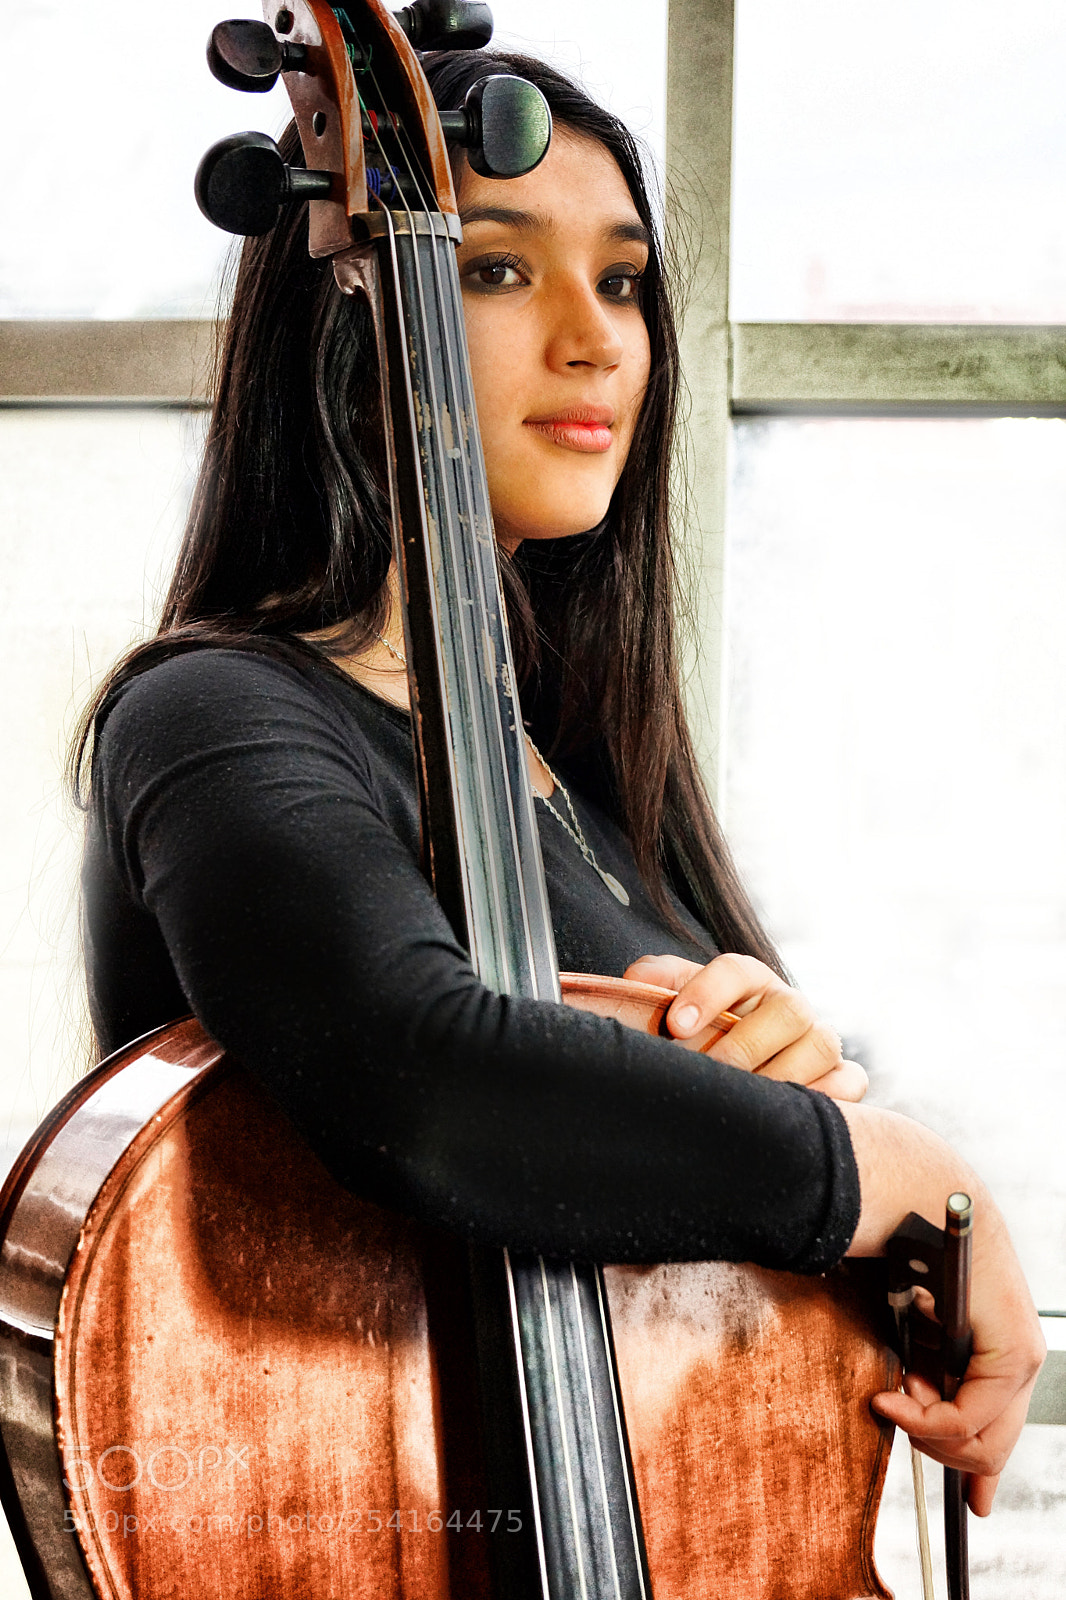 Sony SLT-A65 (SLT-A65V) sample photo. Cello girl photography